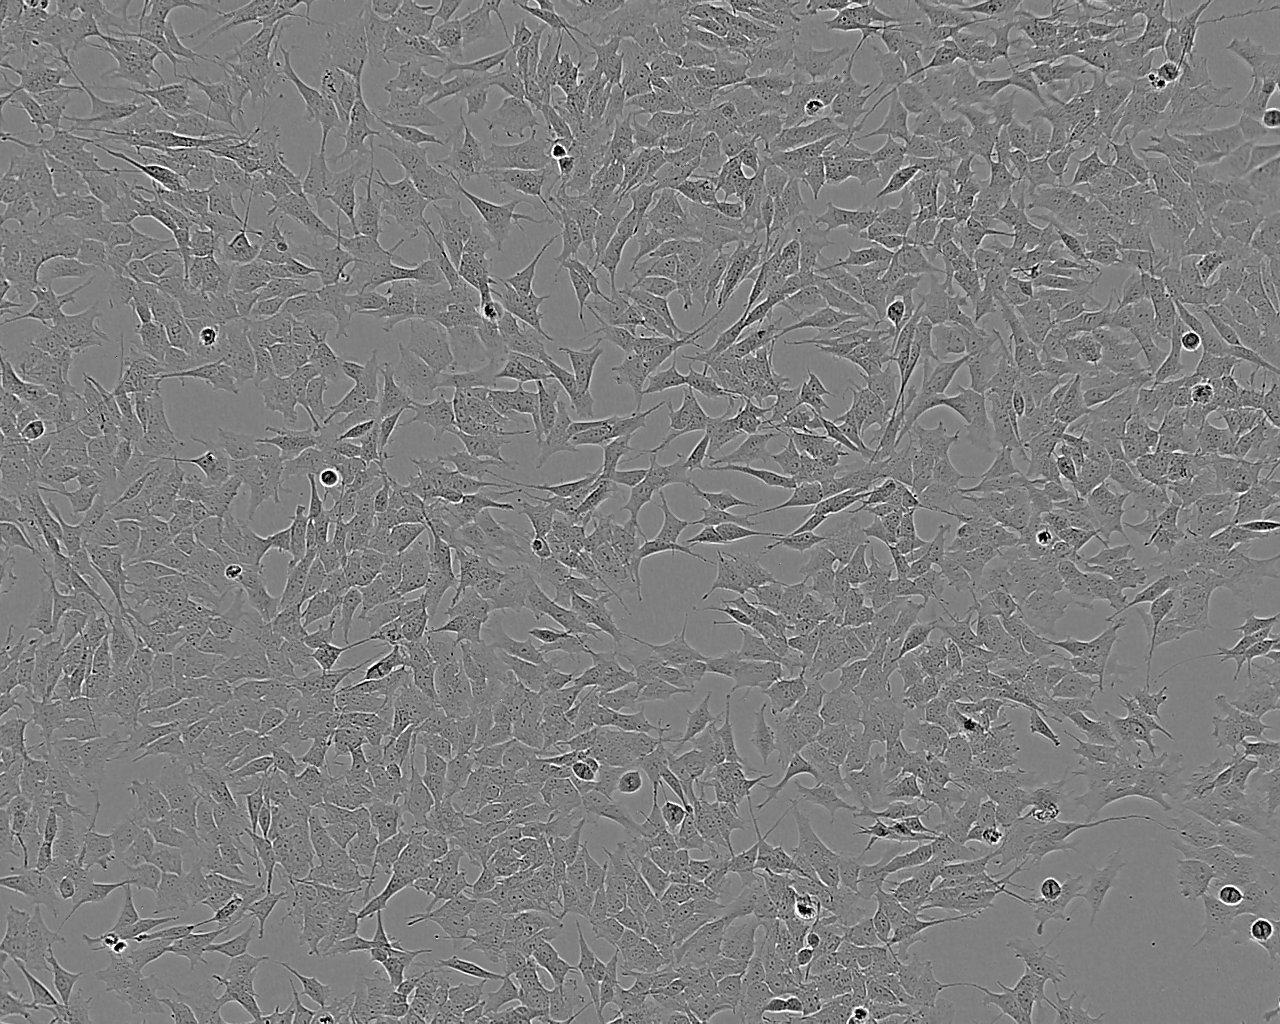 RC-4B/C epithelioid cells人垂体瘤细胞系,RC-4B/C epithelioid cells